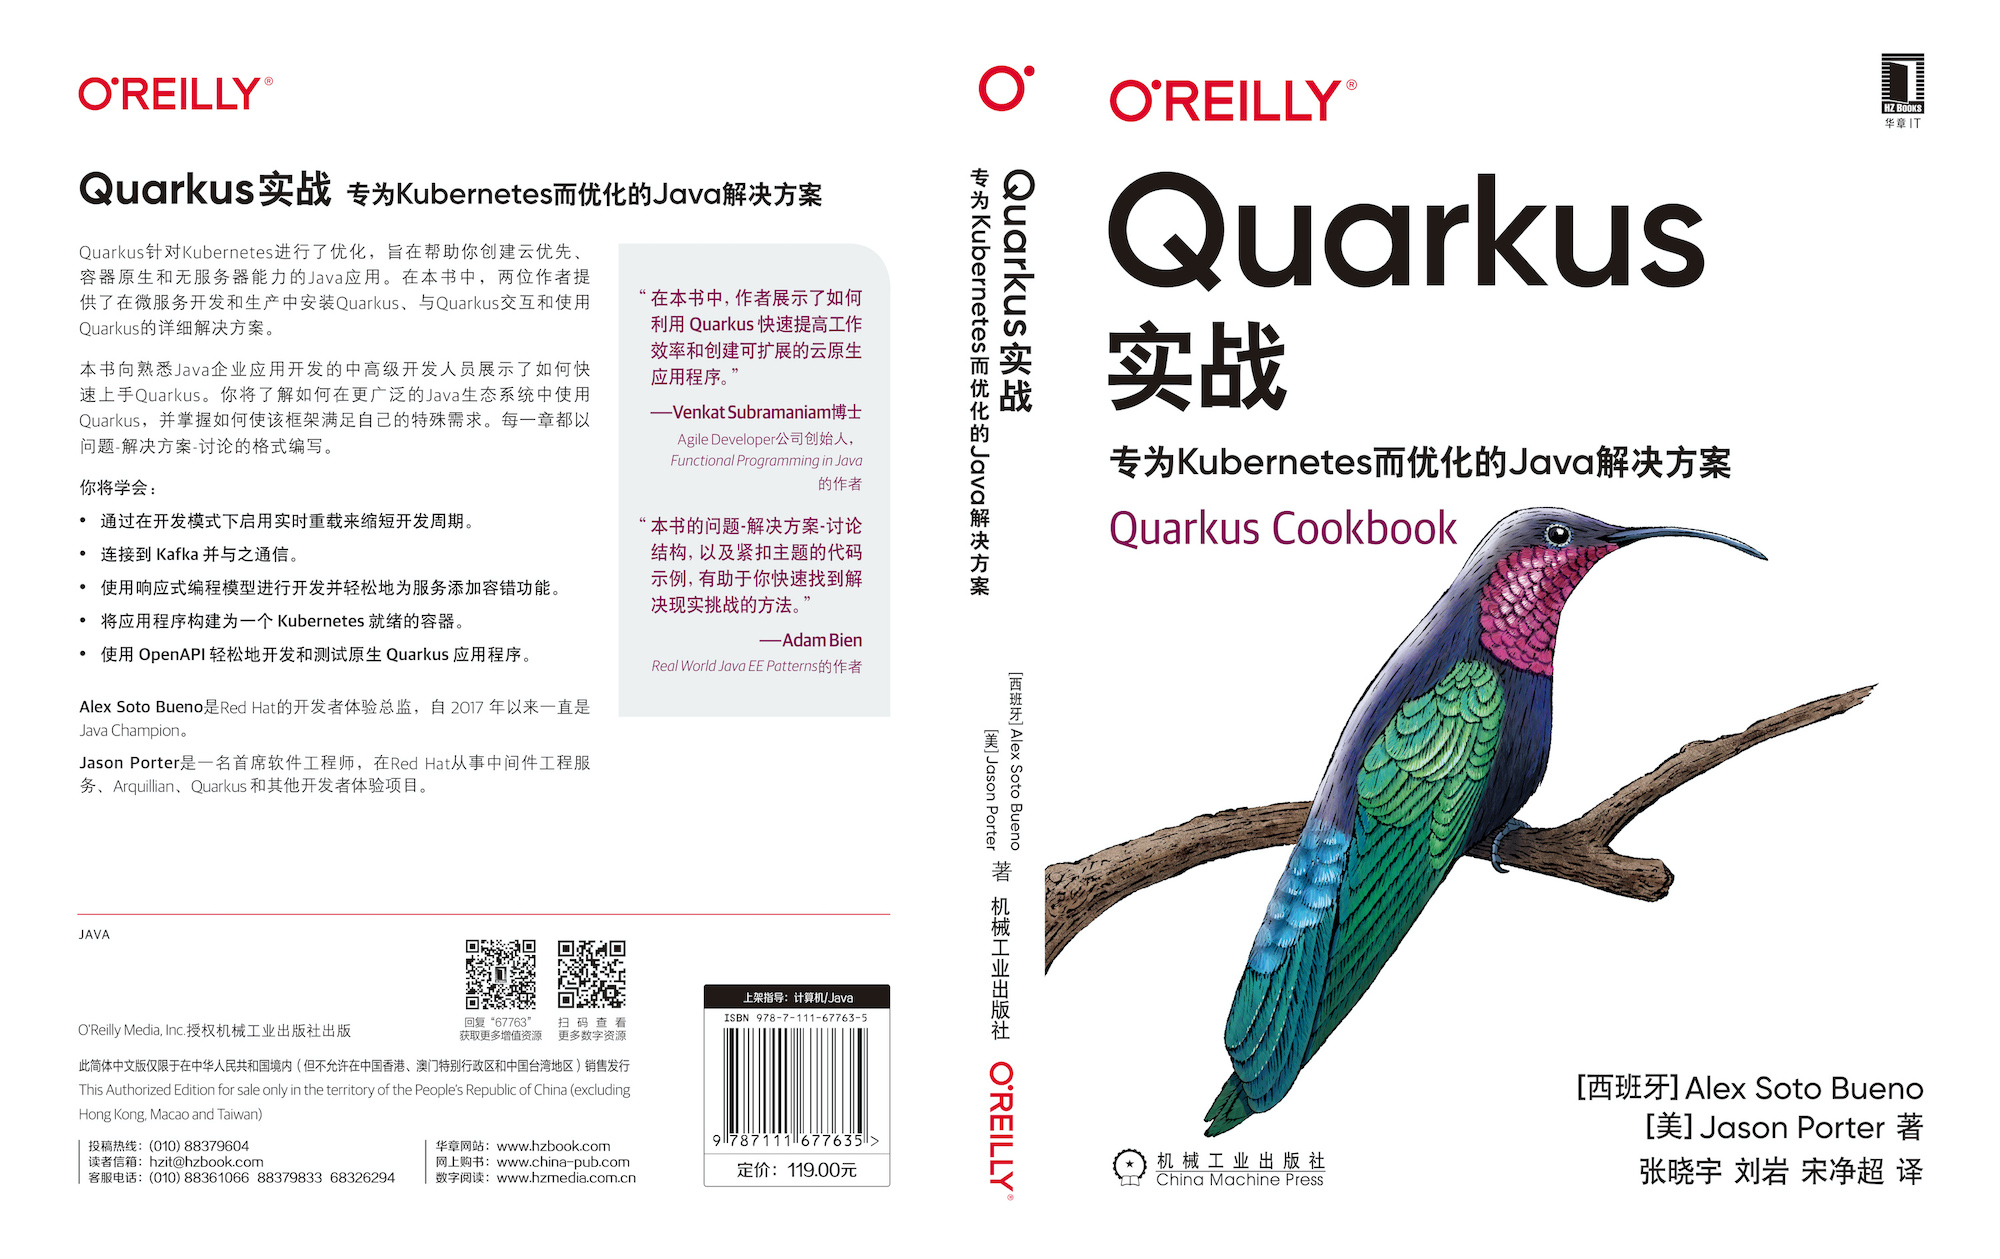 Quarkus cookbook Chinese Edition